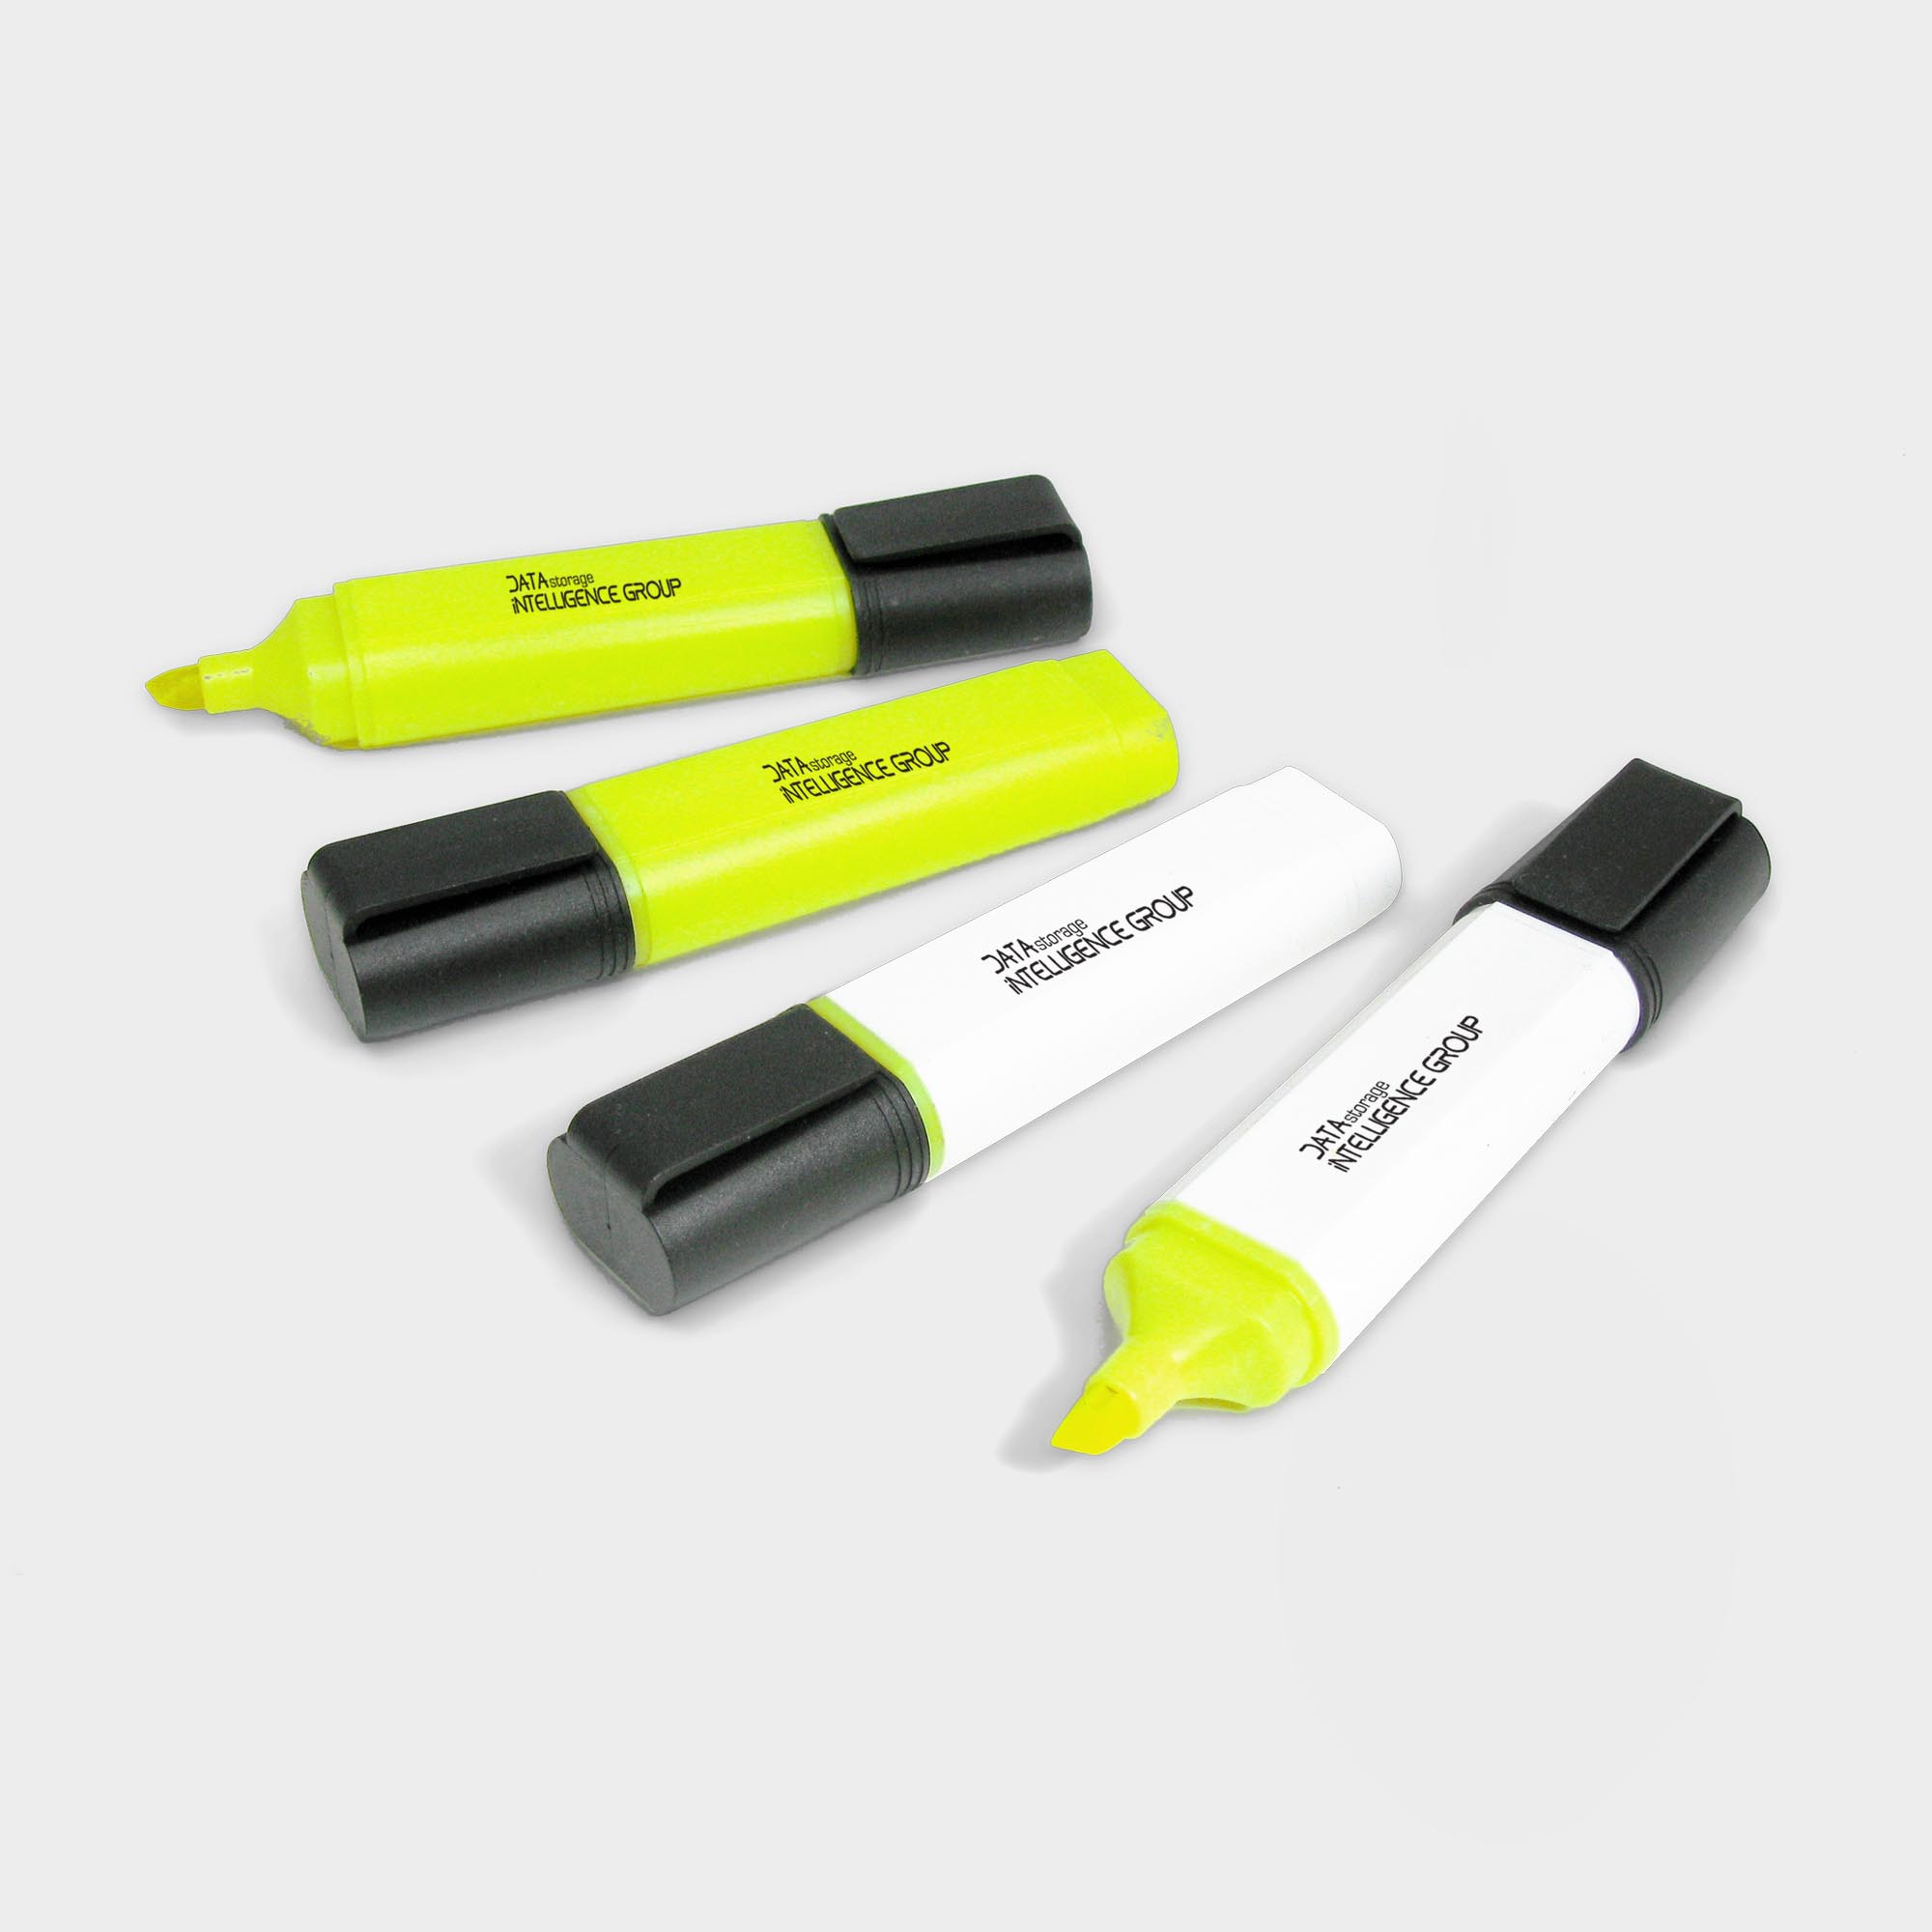 Der Green & Good Highlighter Pen aus recyceltem Kunststoff. Ein praktischer Textmarker aus der EU. Es ist ideal für zu Hause